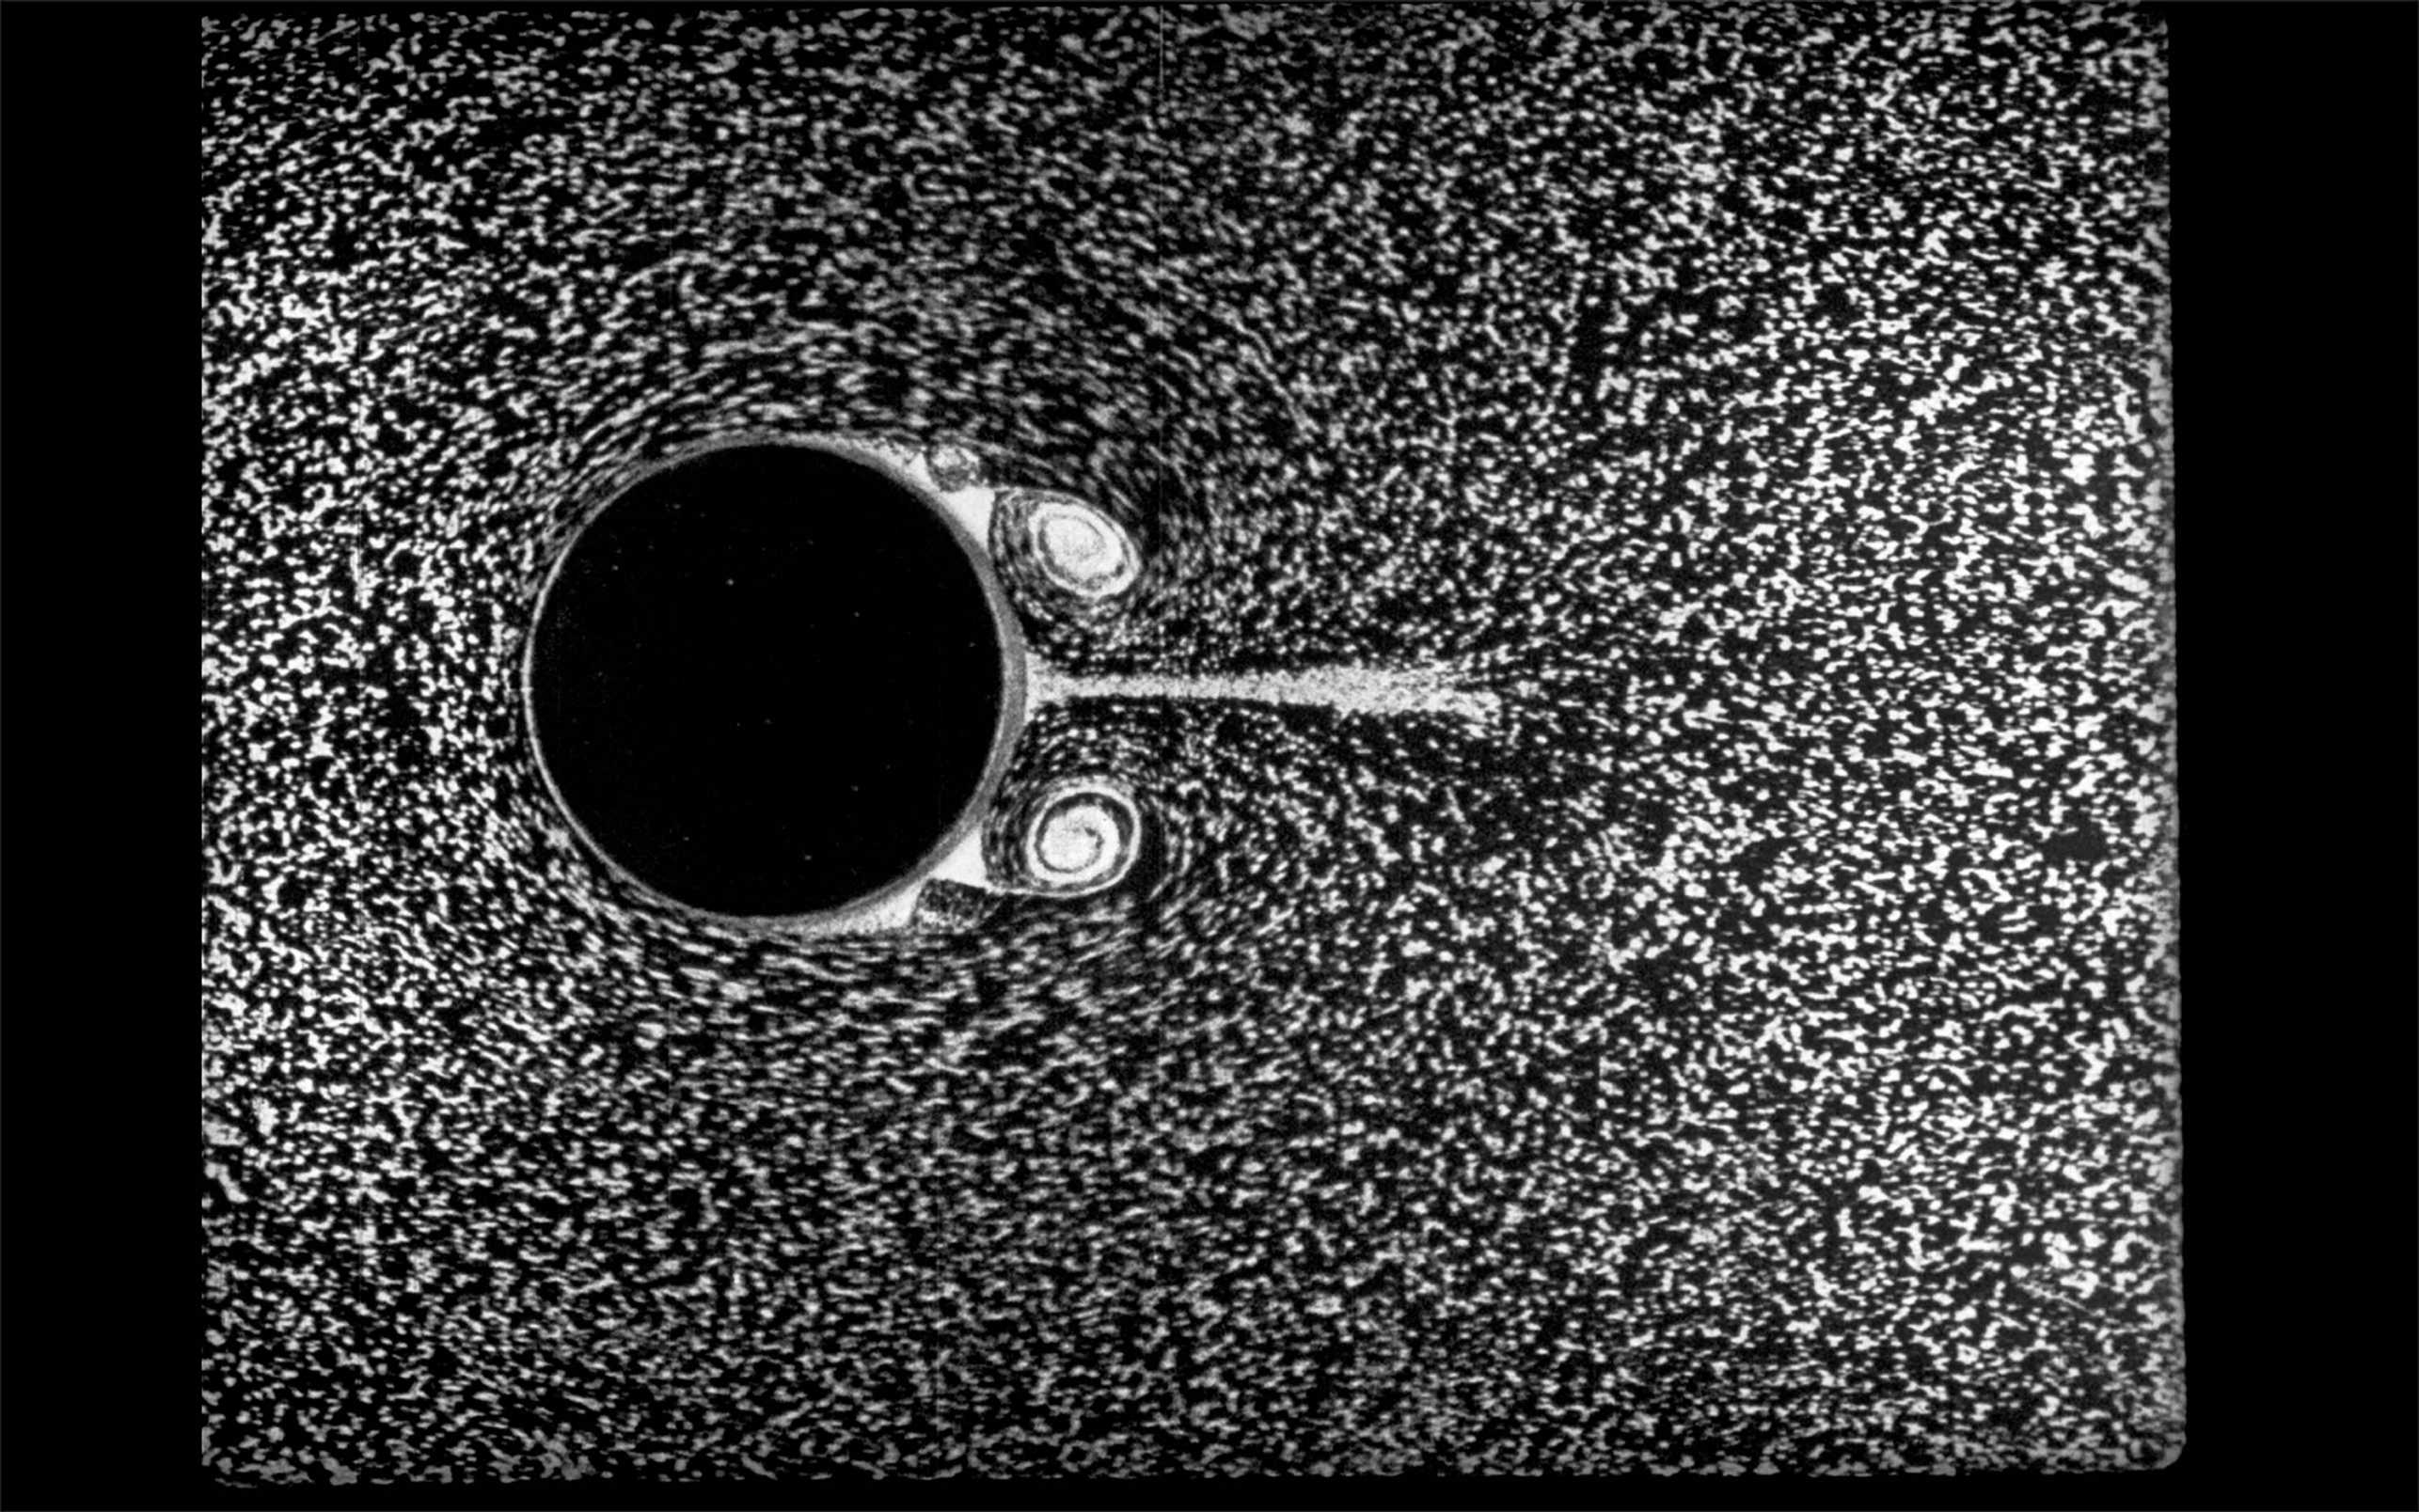 Schwarz-weisses Bild mit weissen flimmernden Partikeln und einem schwarzen Kreis